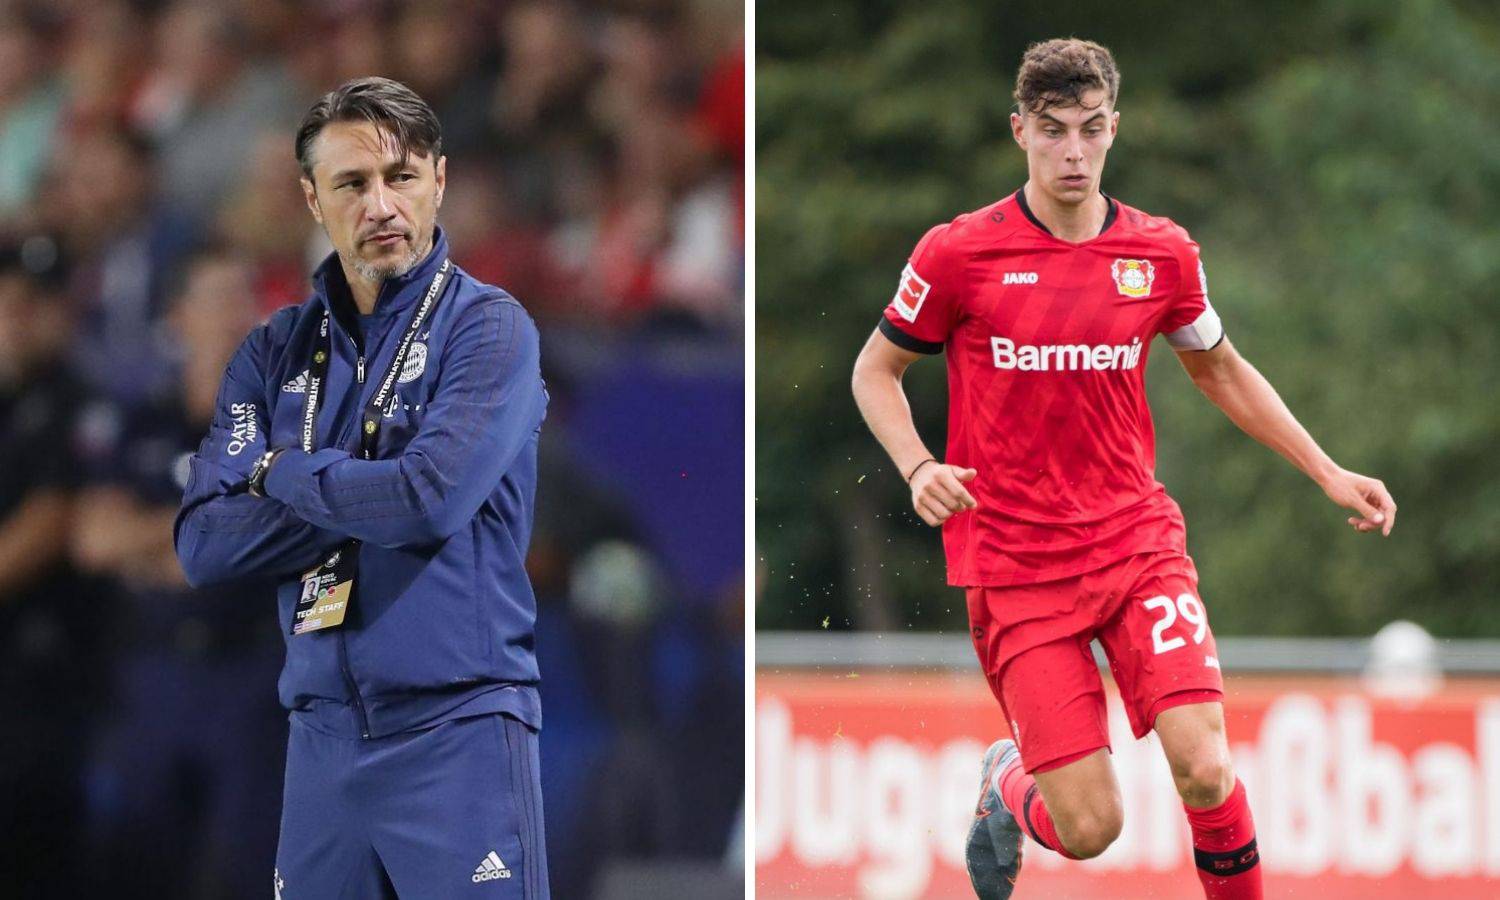 Nitko ne želi u Bayern: 'Mislim da to nije pravi korak za mene'